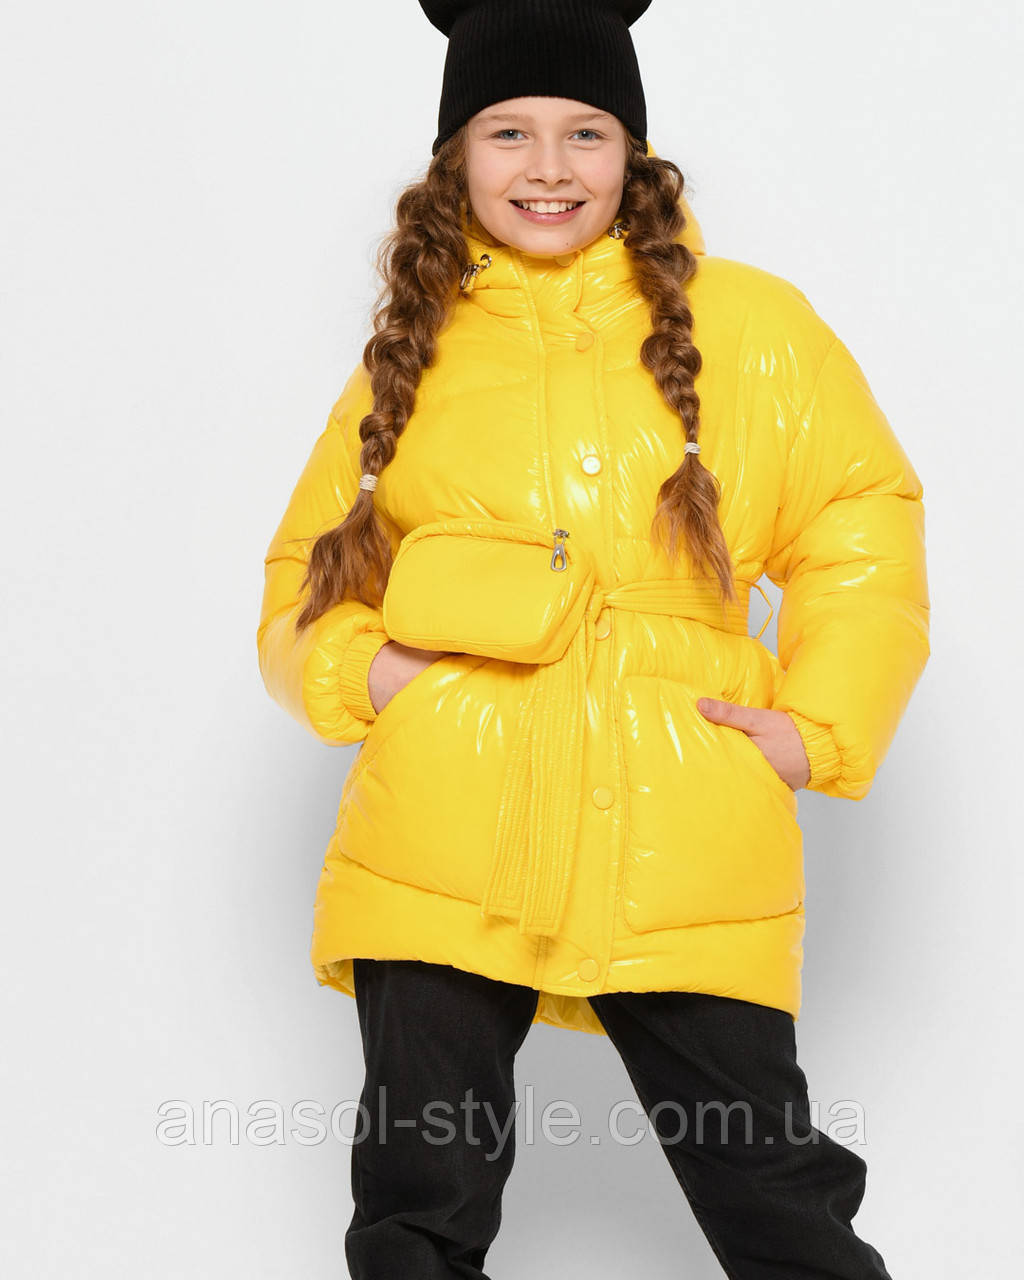 Ультрамодная зимняя куртка для девочек от 6 до 17 лет пуховик с капюшоном желтая DT-8324-6